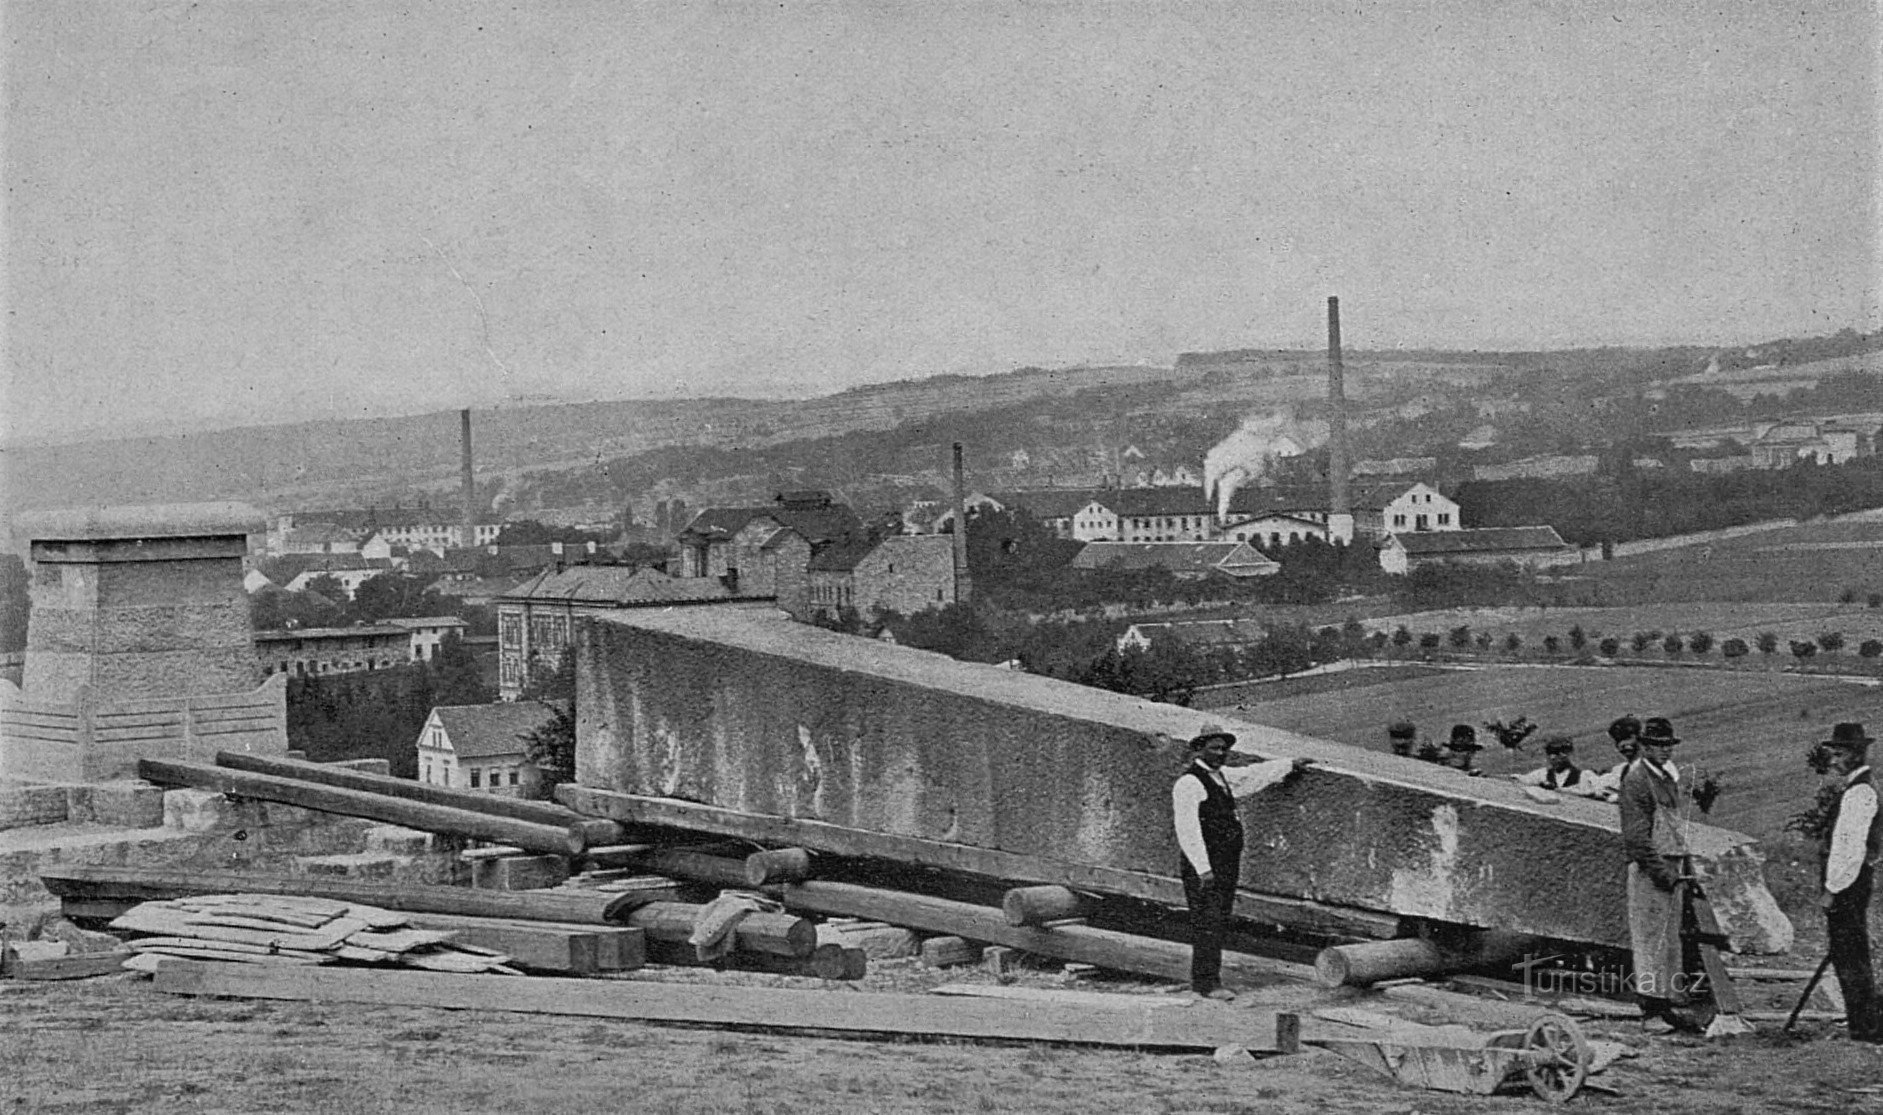 Lucrare la obeliscul lui Riegro (Hořice, 1906)